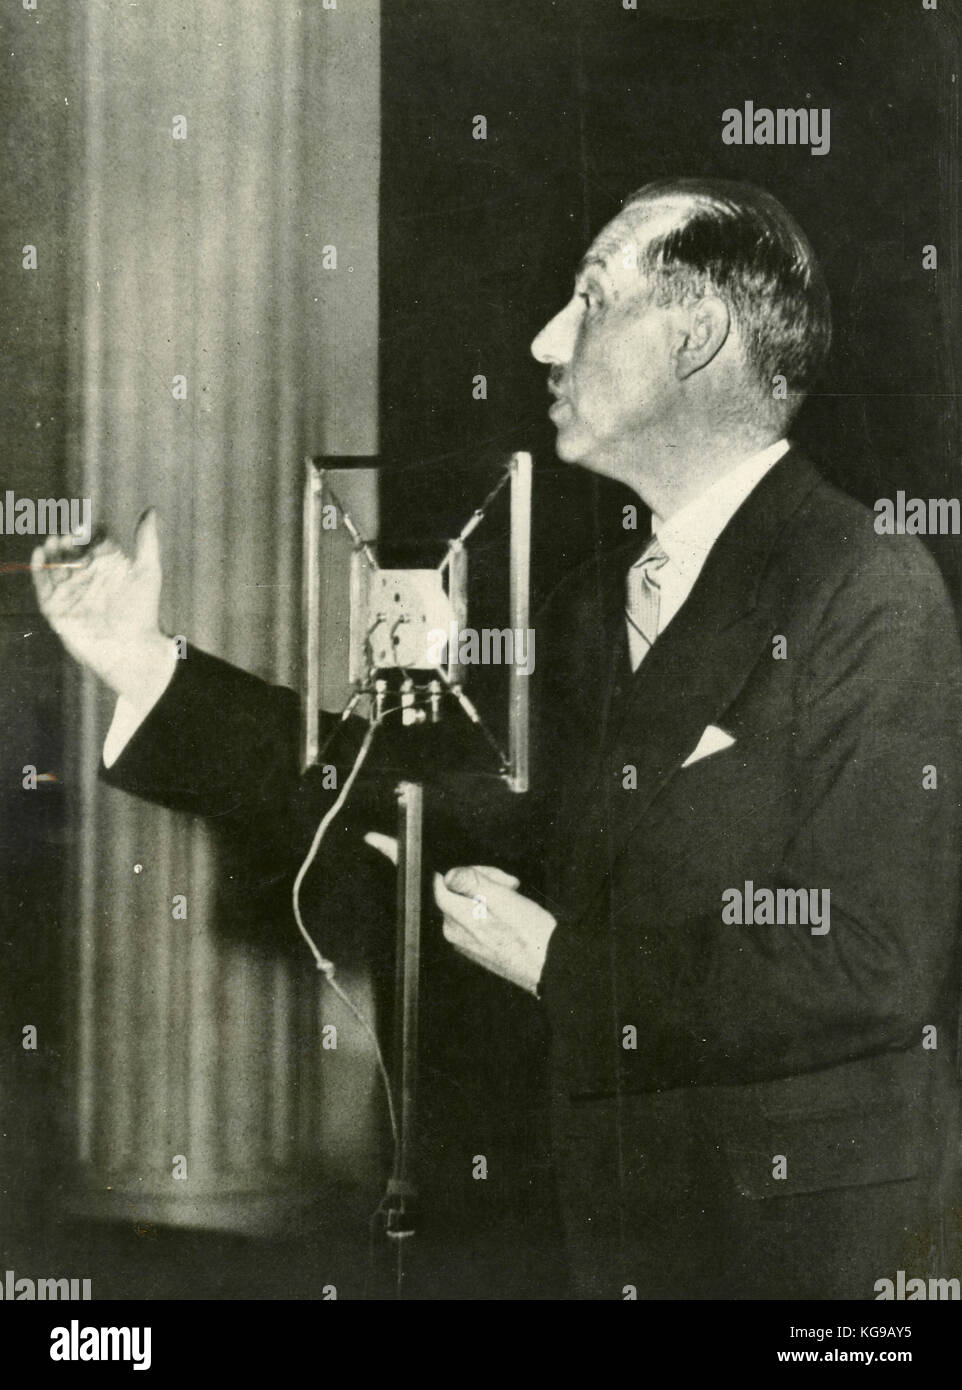 Premier ministre belge Paul Van Zeeland lors d'un discours électoral, Bruxelles 1937 Banque D'Images